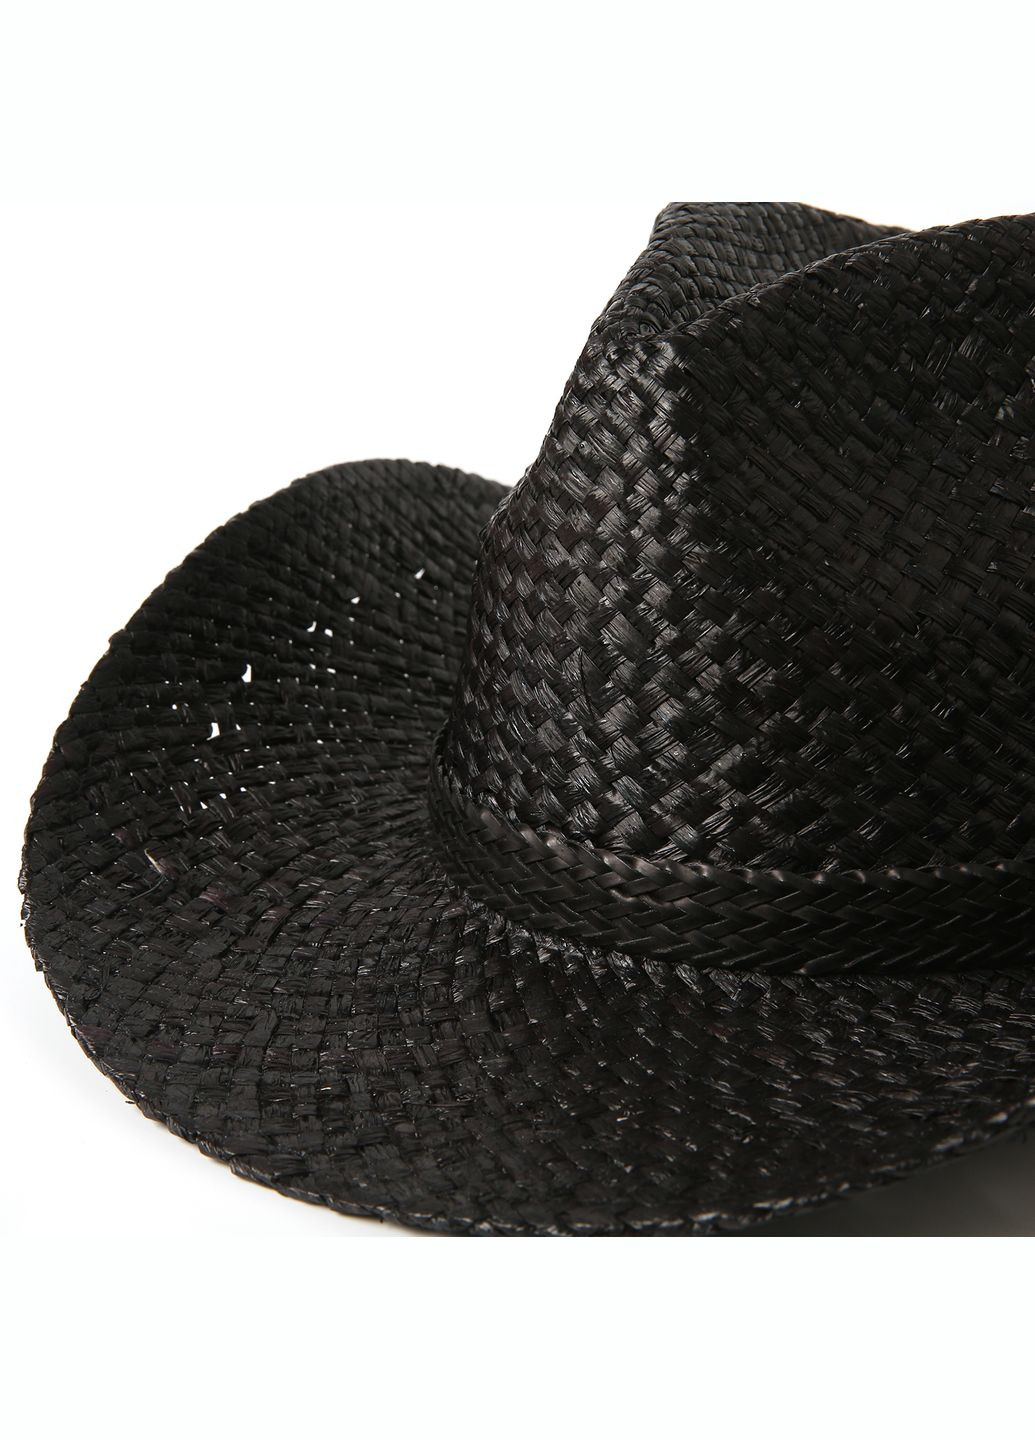 Шляпа ковбойка мужская рафия черная JANET 818-201 LuckyLOOK 818-201m (289360433)